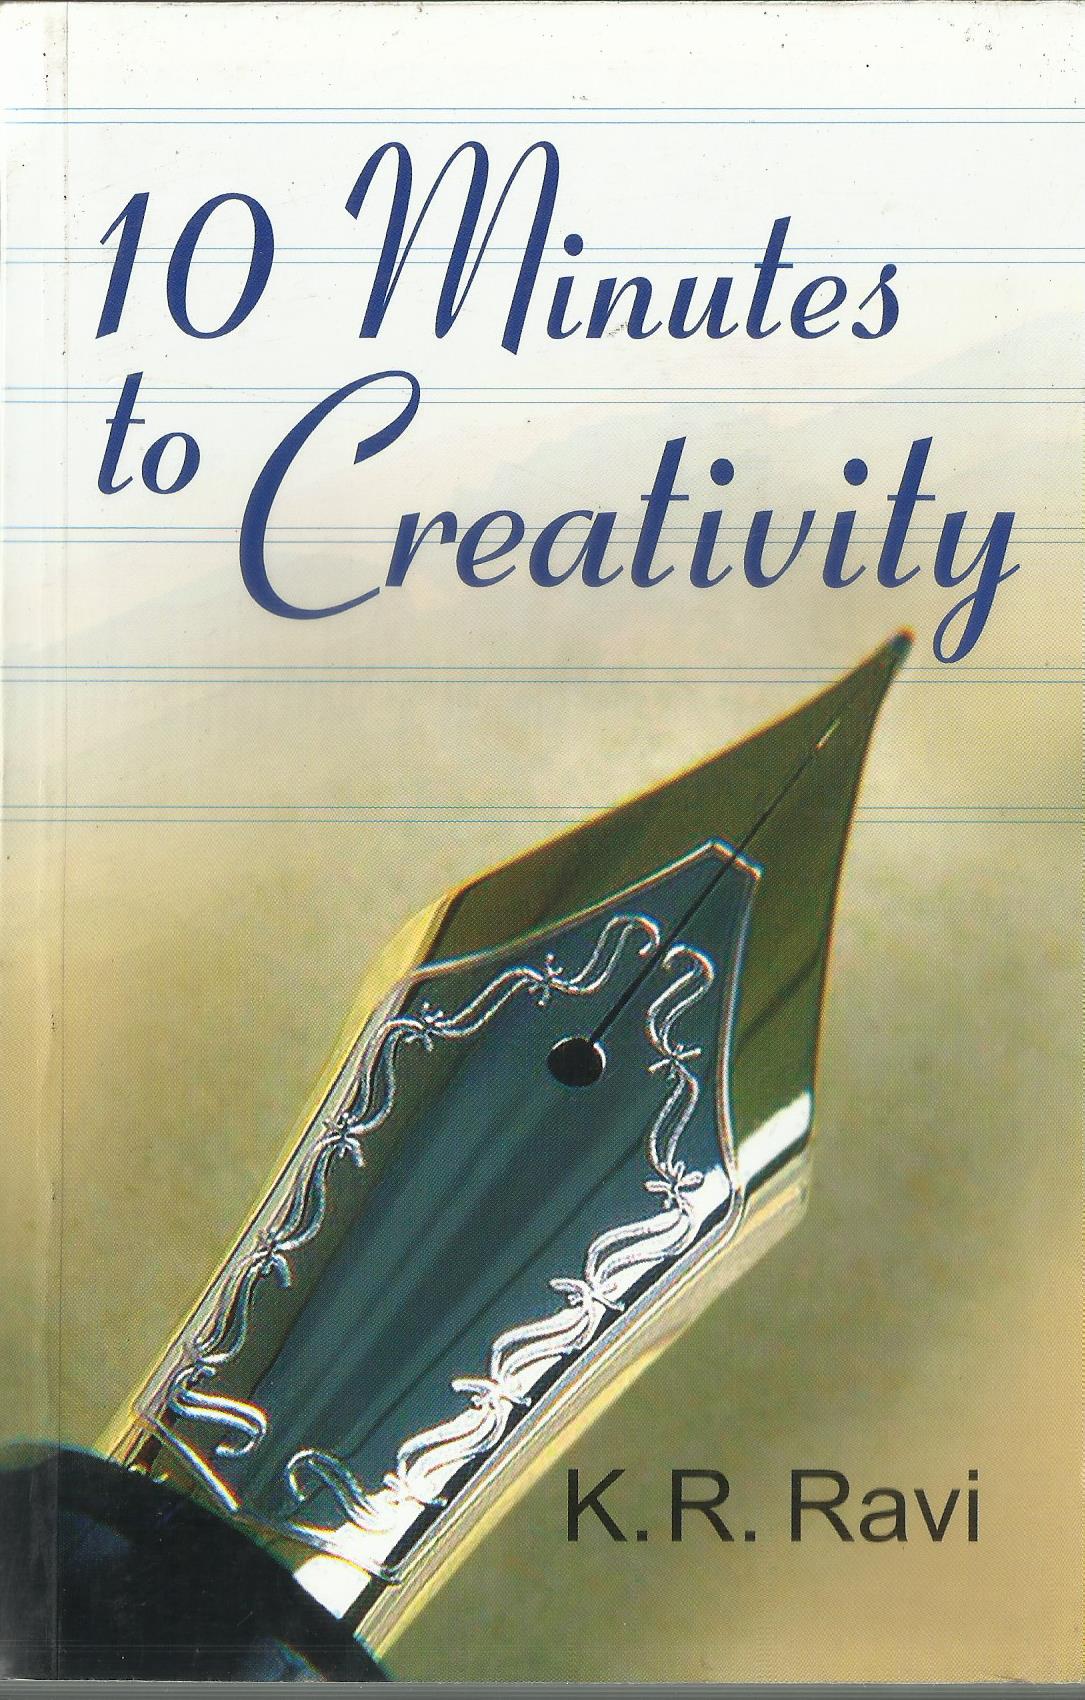 10 MINUTES TO CREATIVITY - sophiabuy